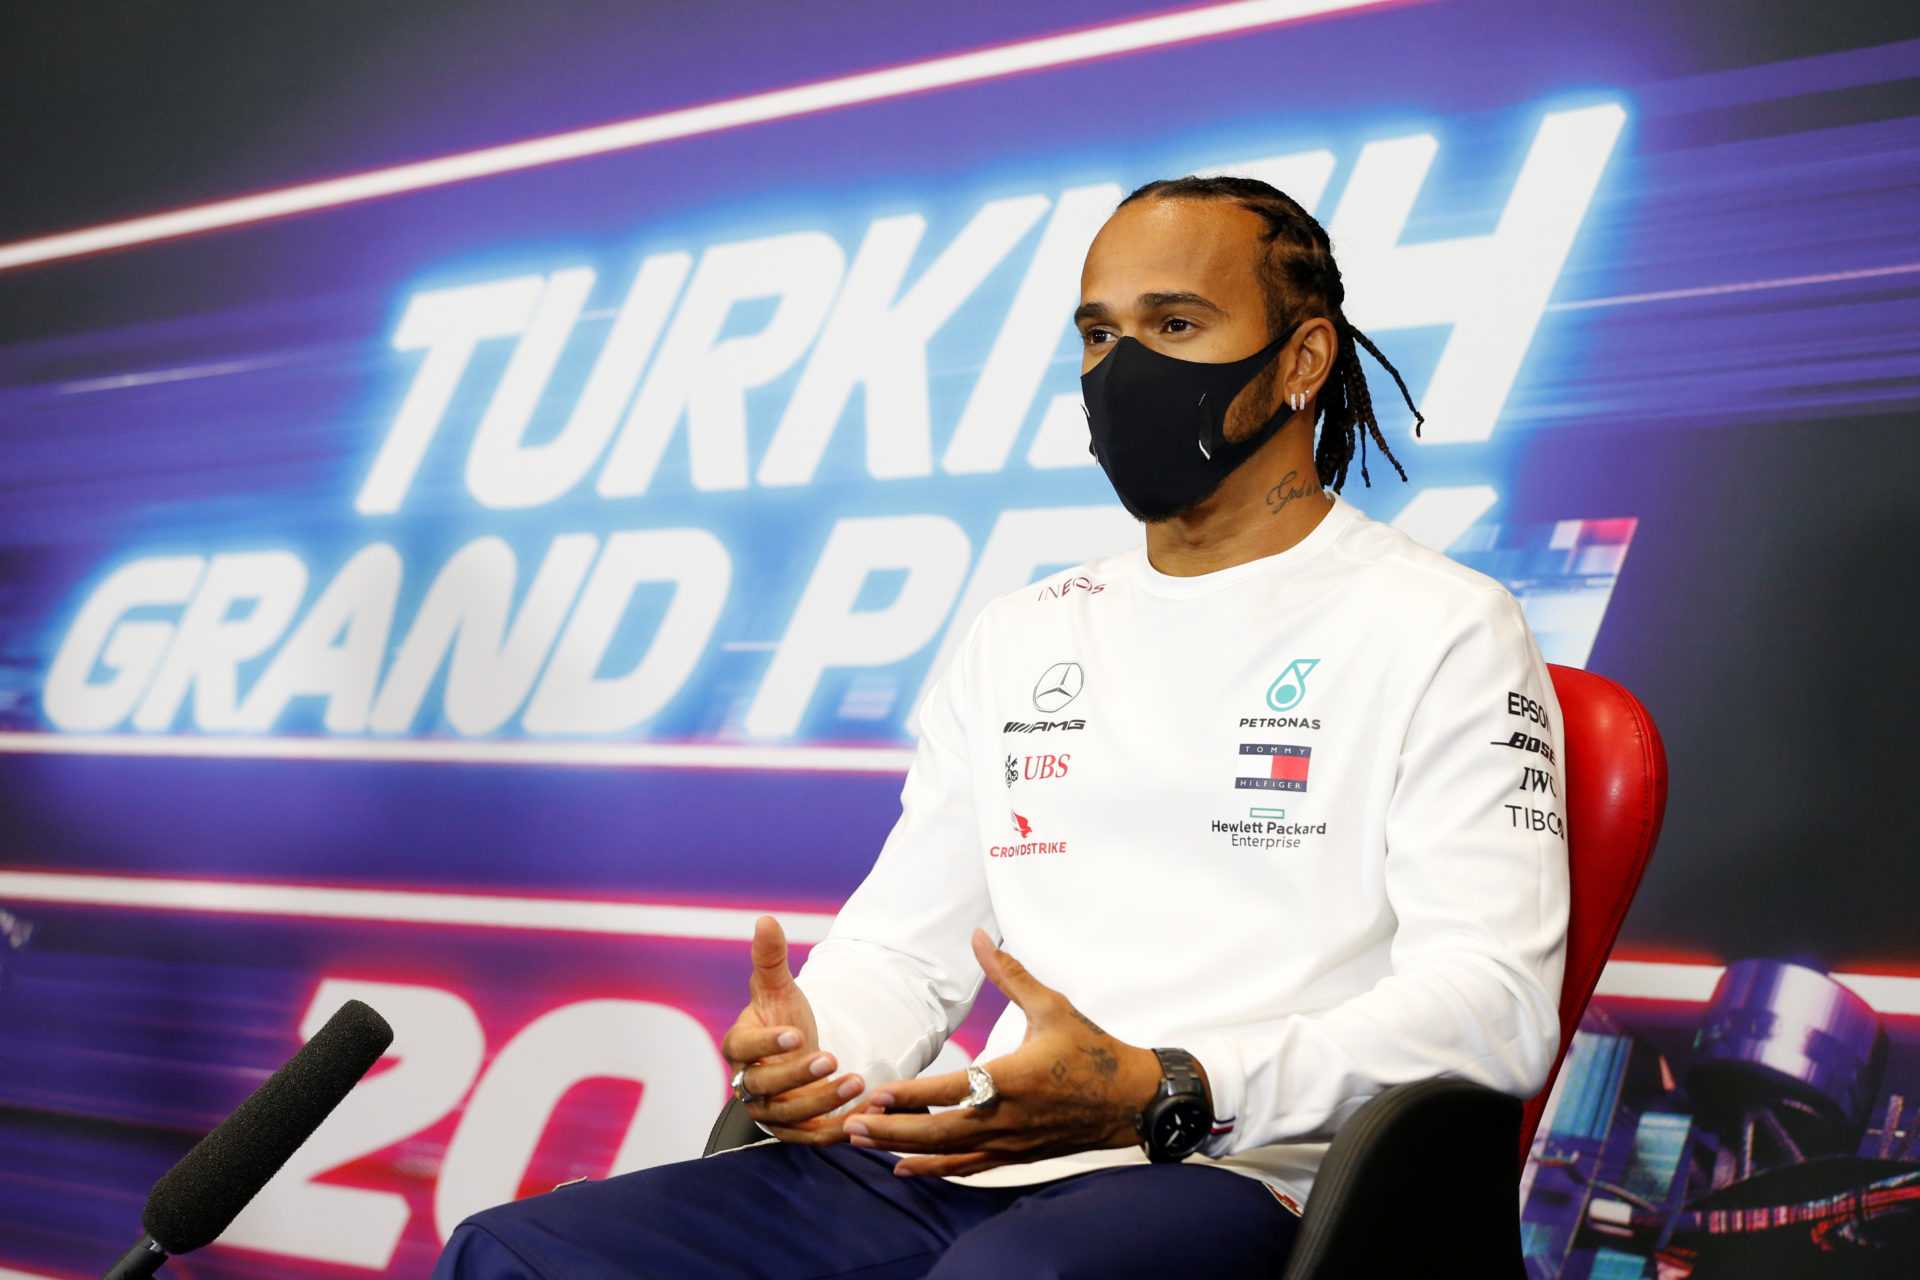 "Ce n'était pas à Singapour" - Lewis Hamilton révèle comment Lauda et Brawn lui ont vendu le rêve de Mercedes